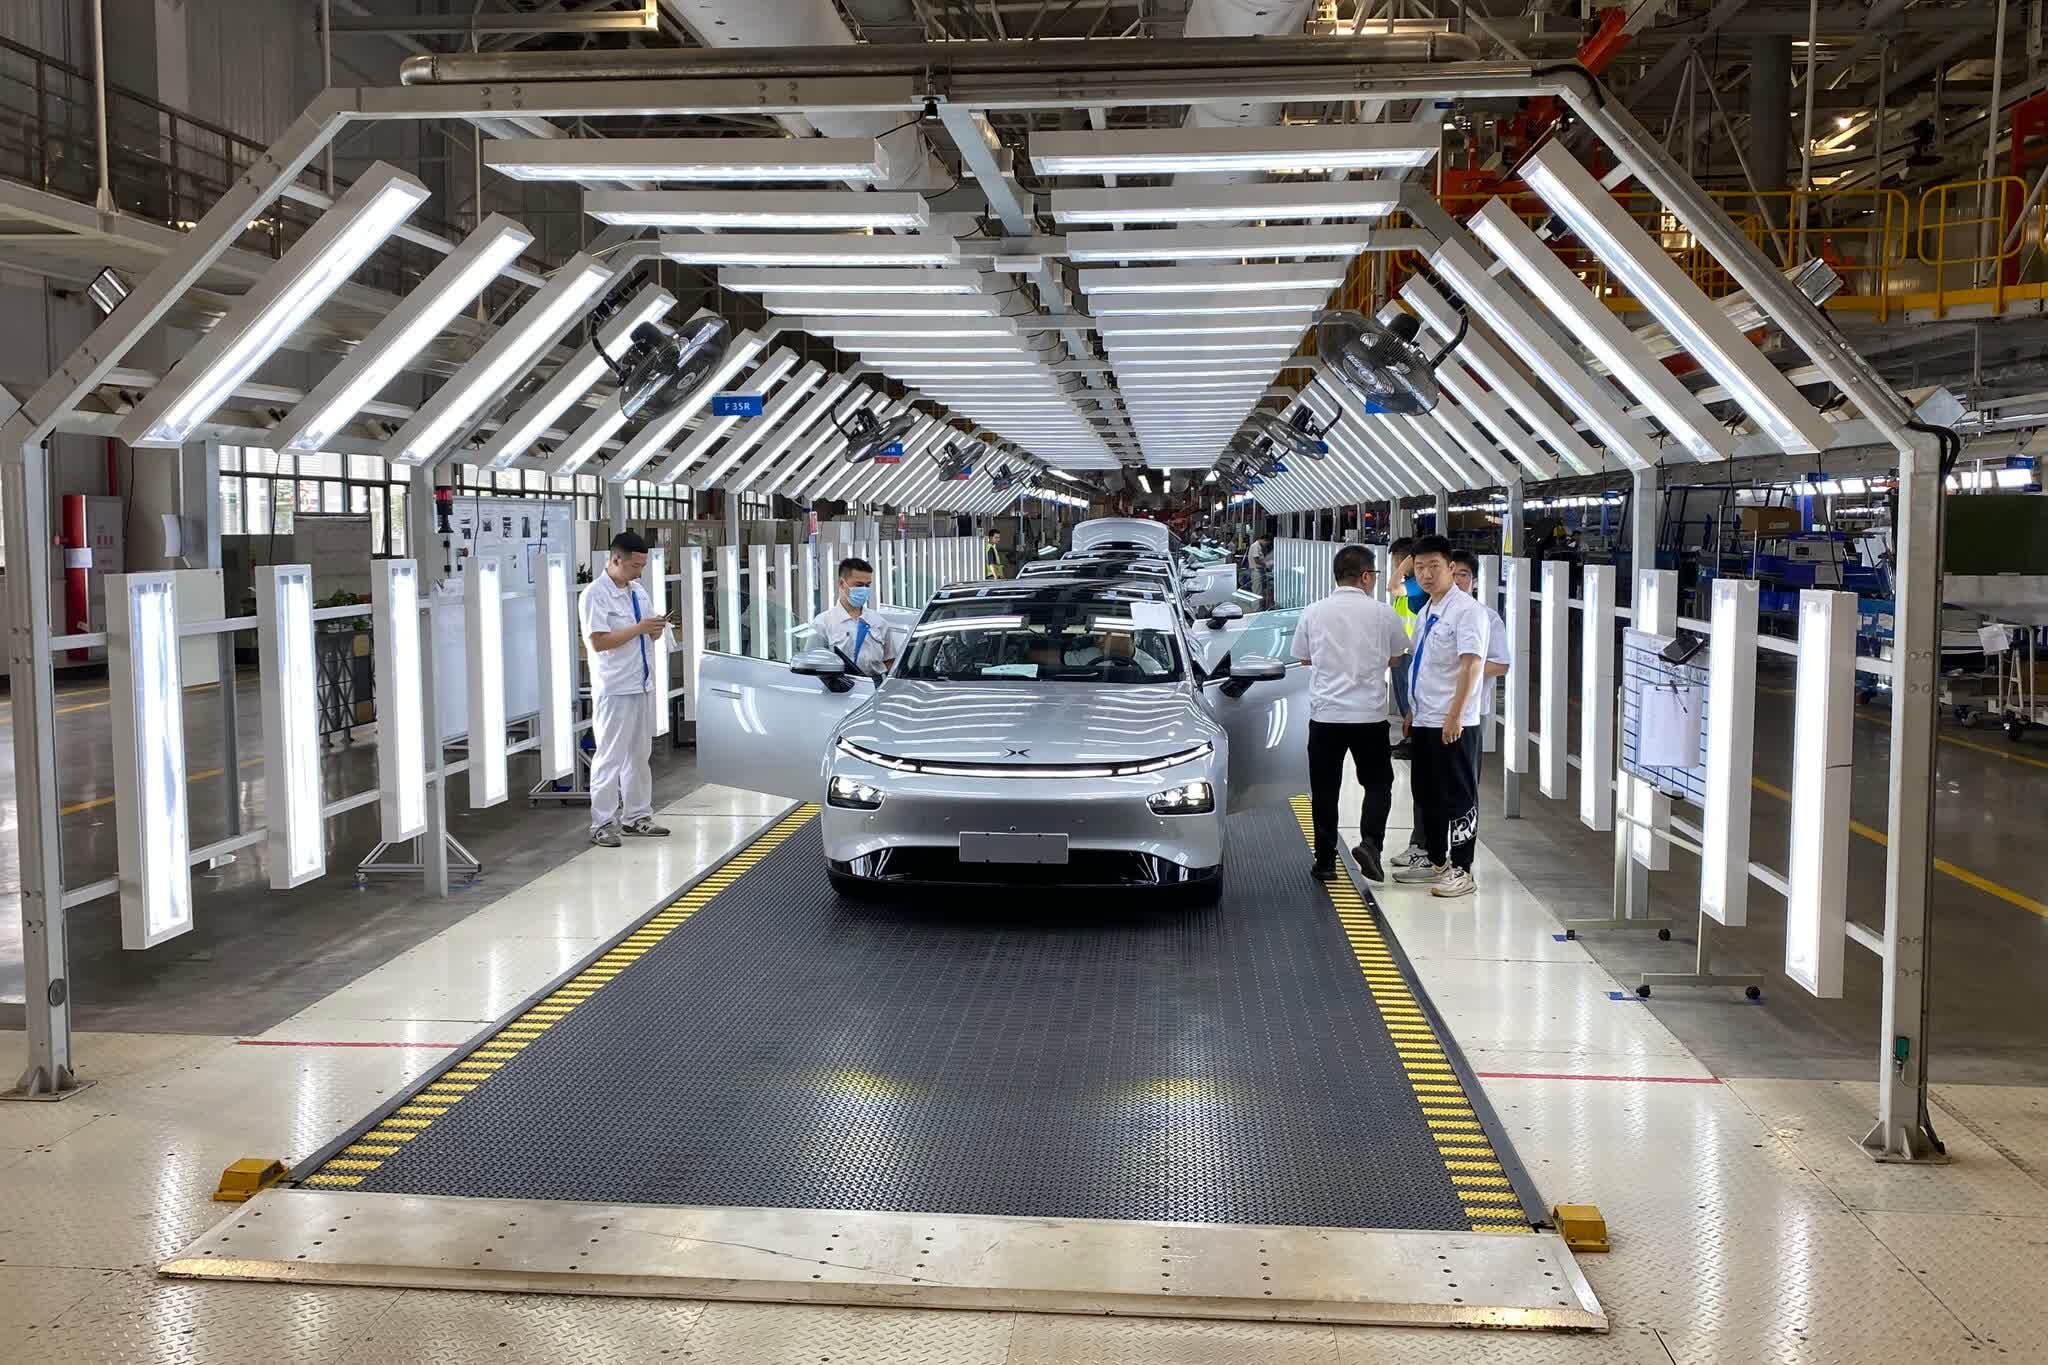 L’industrie automobile américaine tremble face aux voitures électriques chinoises